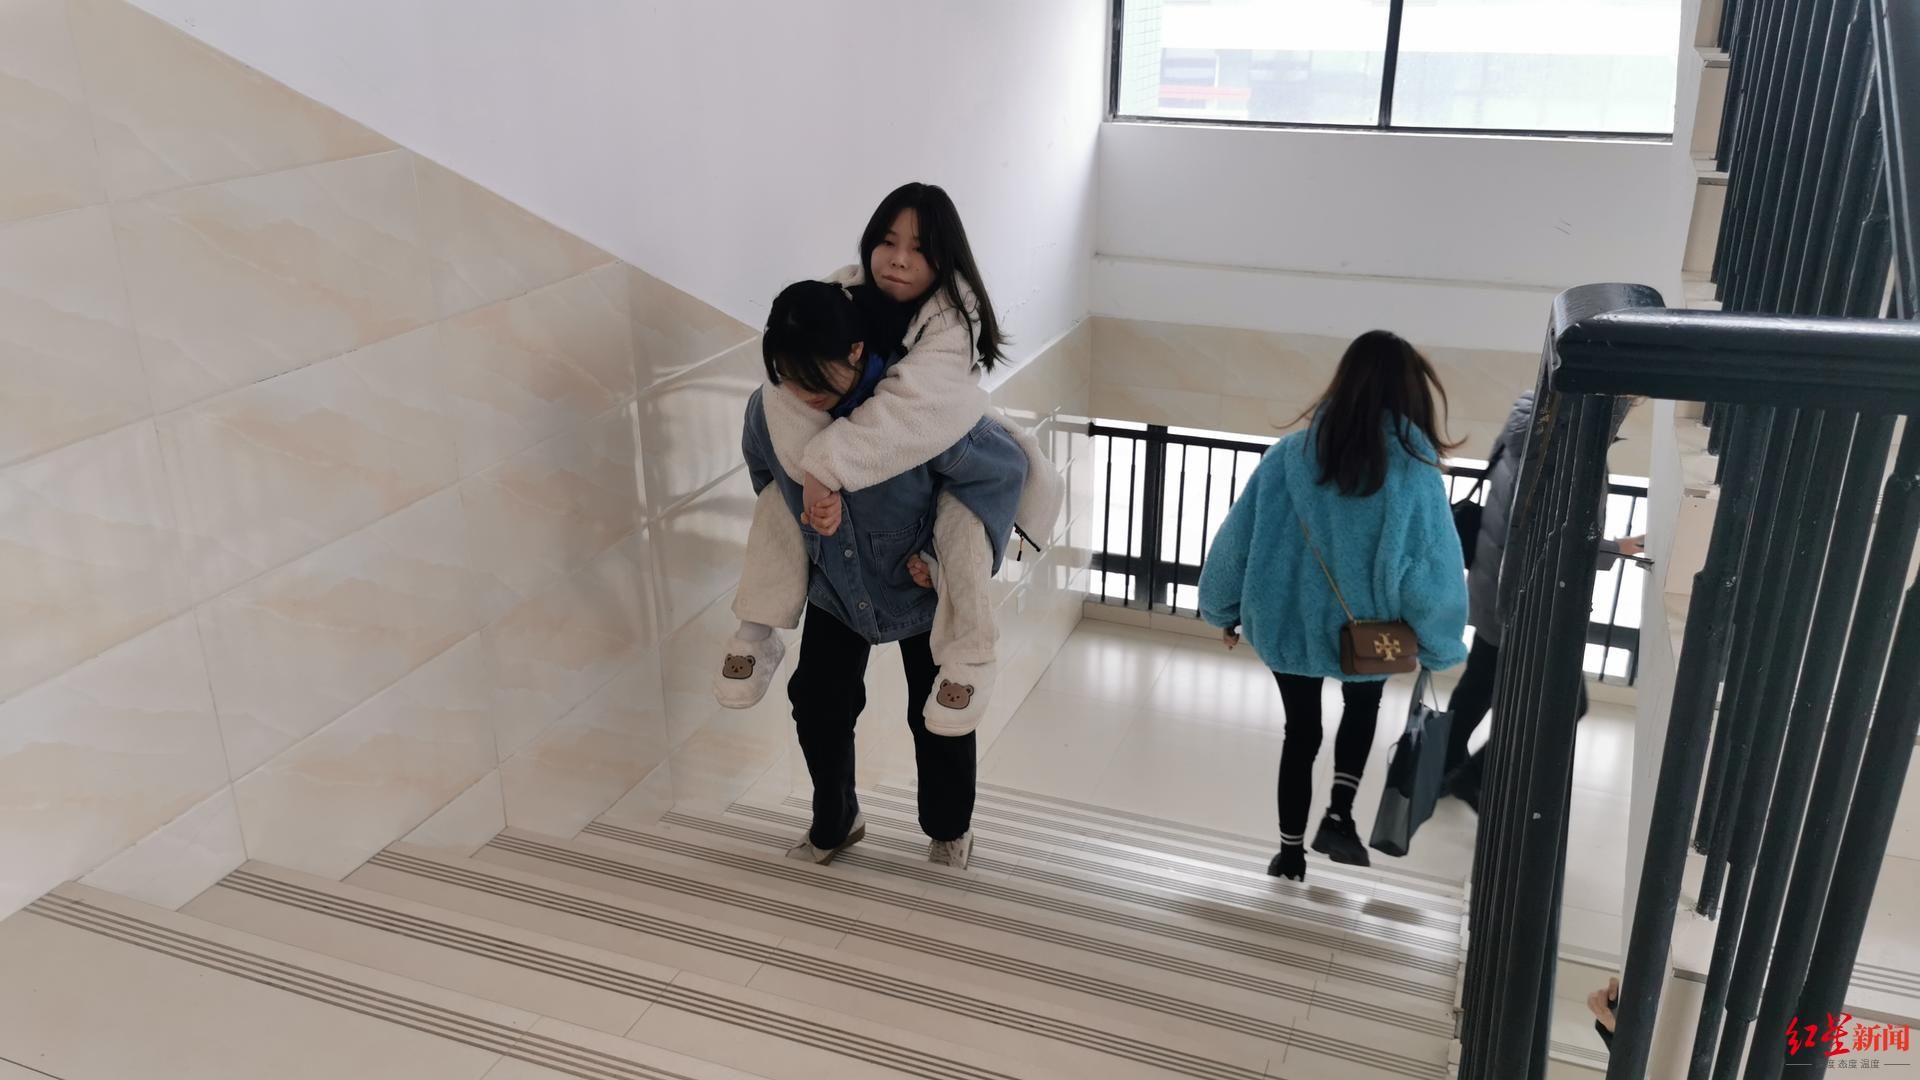 王绍强|这一背，就是两年！19岁女生坚持背残疾同学上课，希望一起考上大学